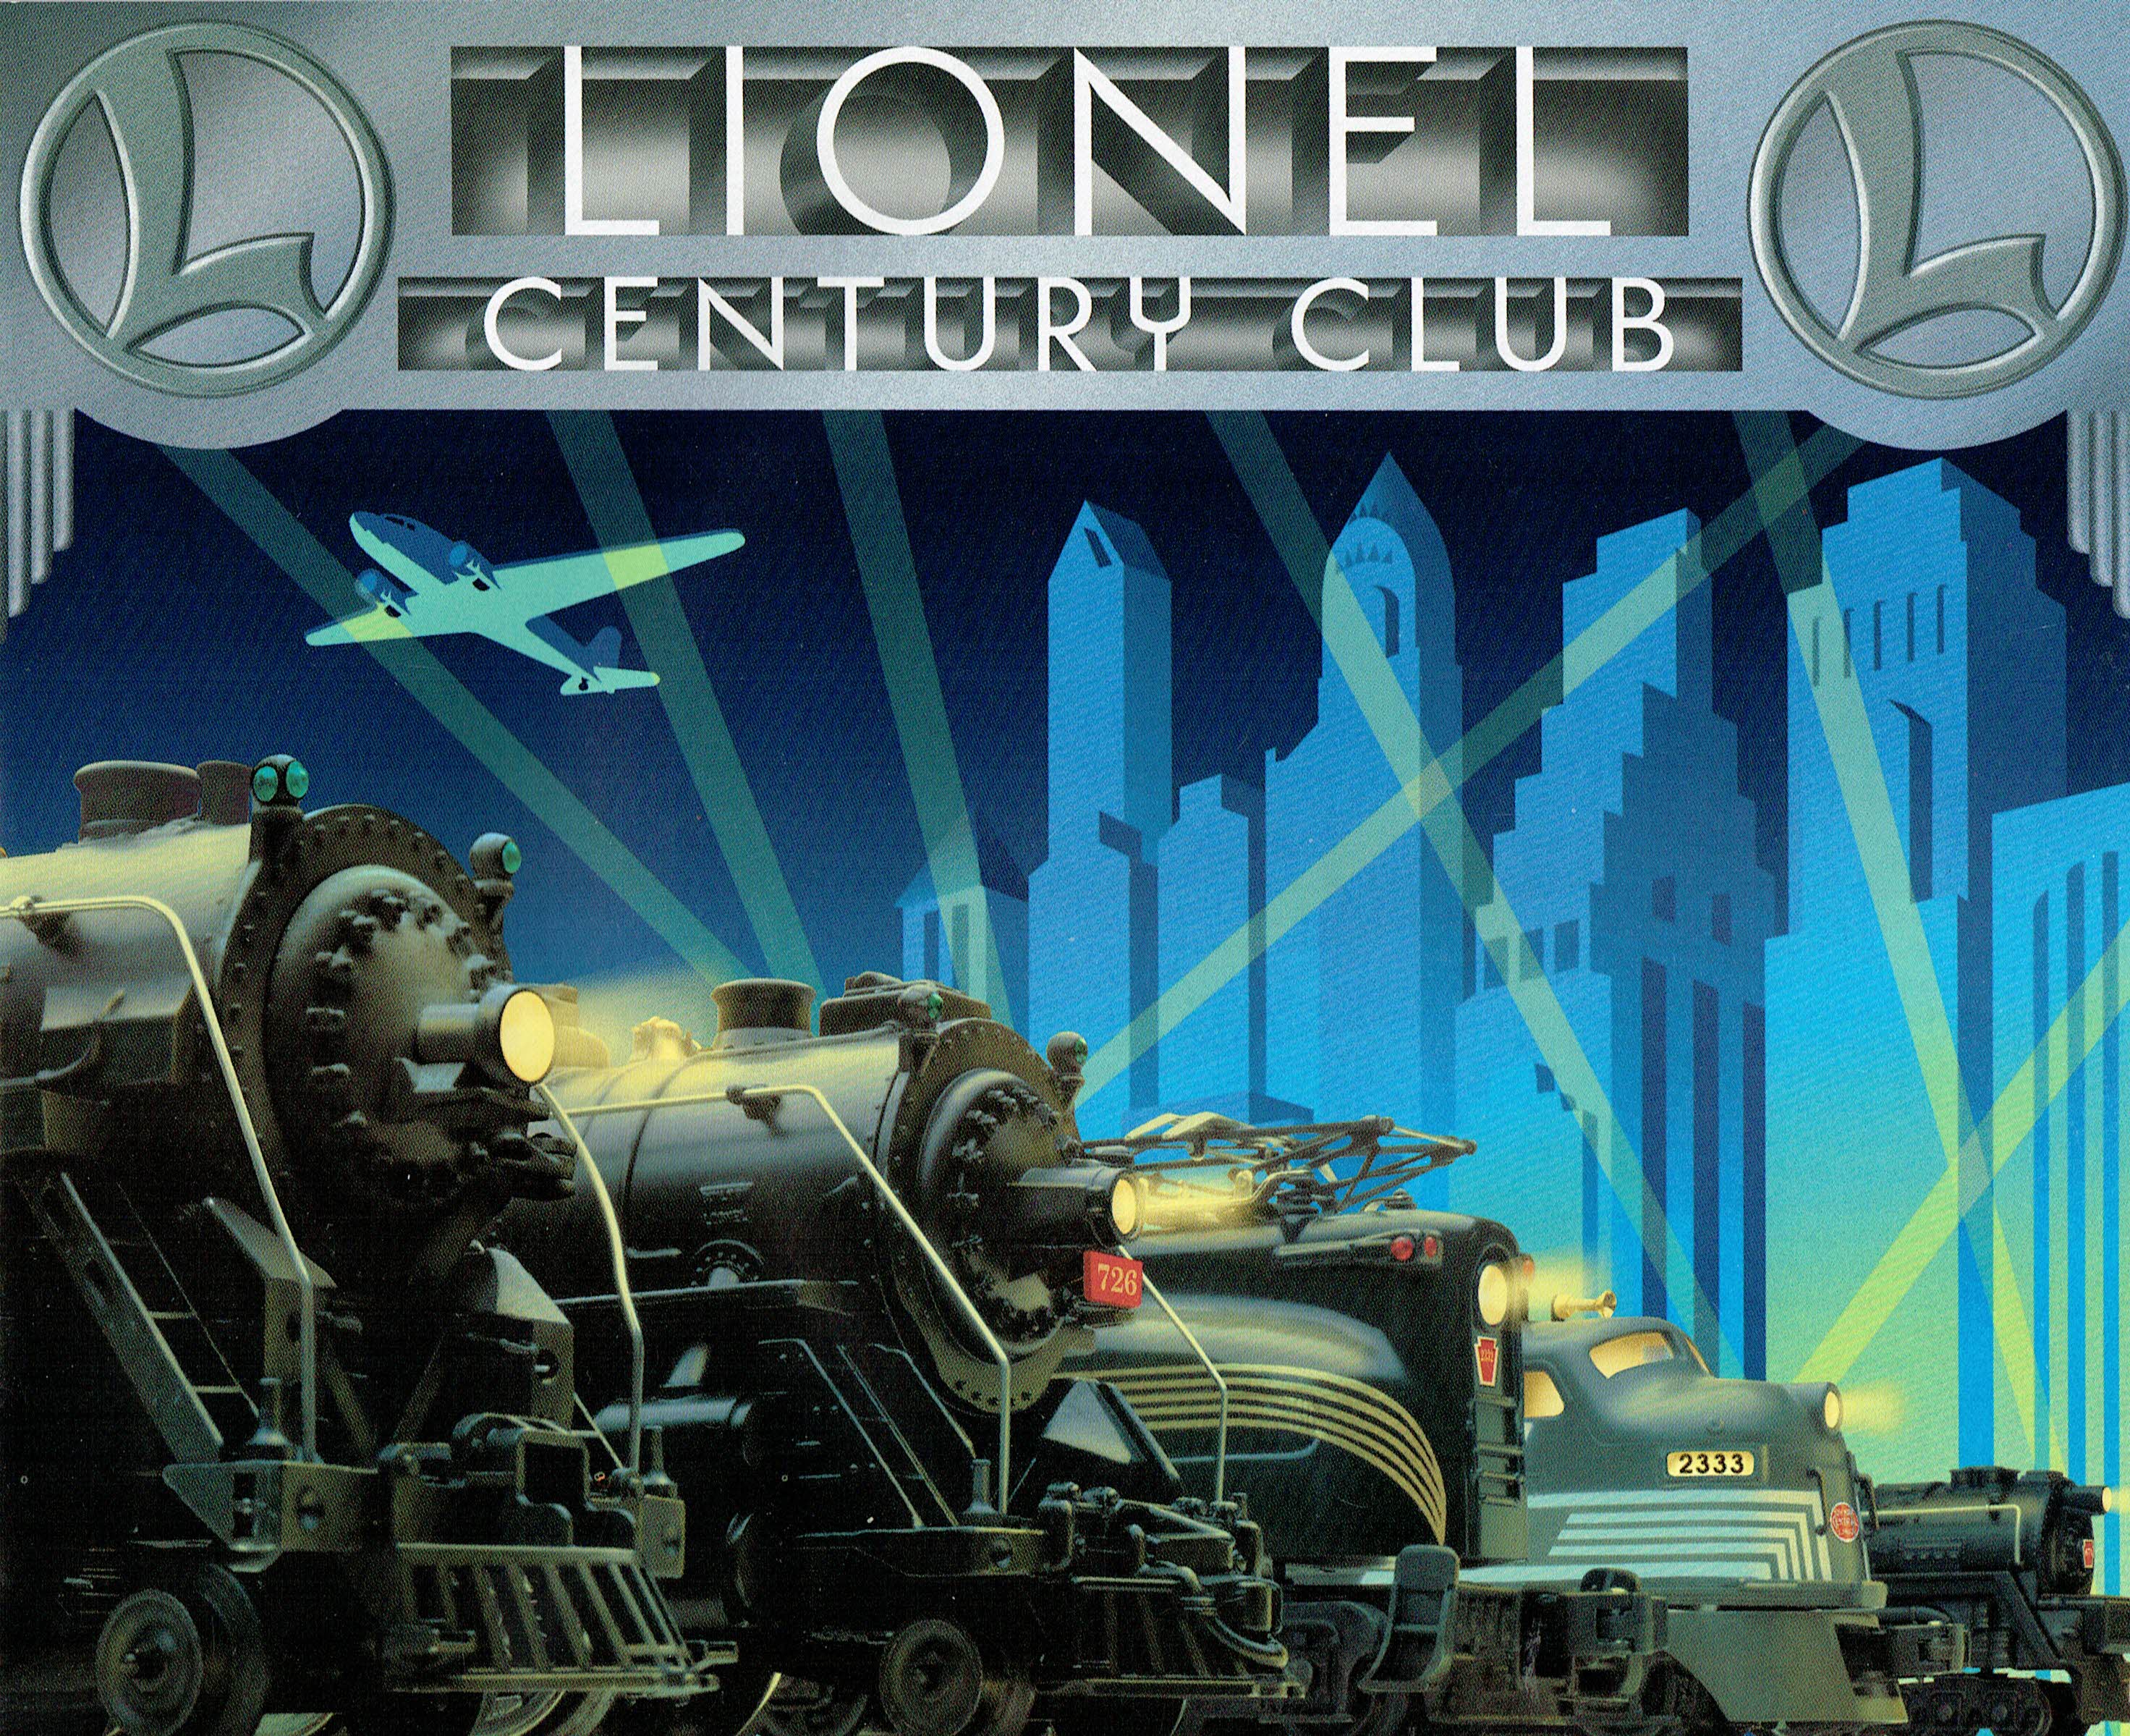 Lionel 1996 Century Club Catalog image